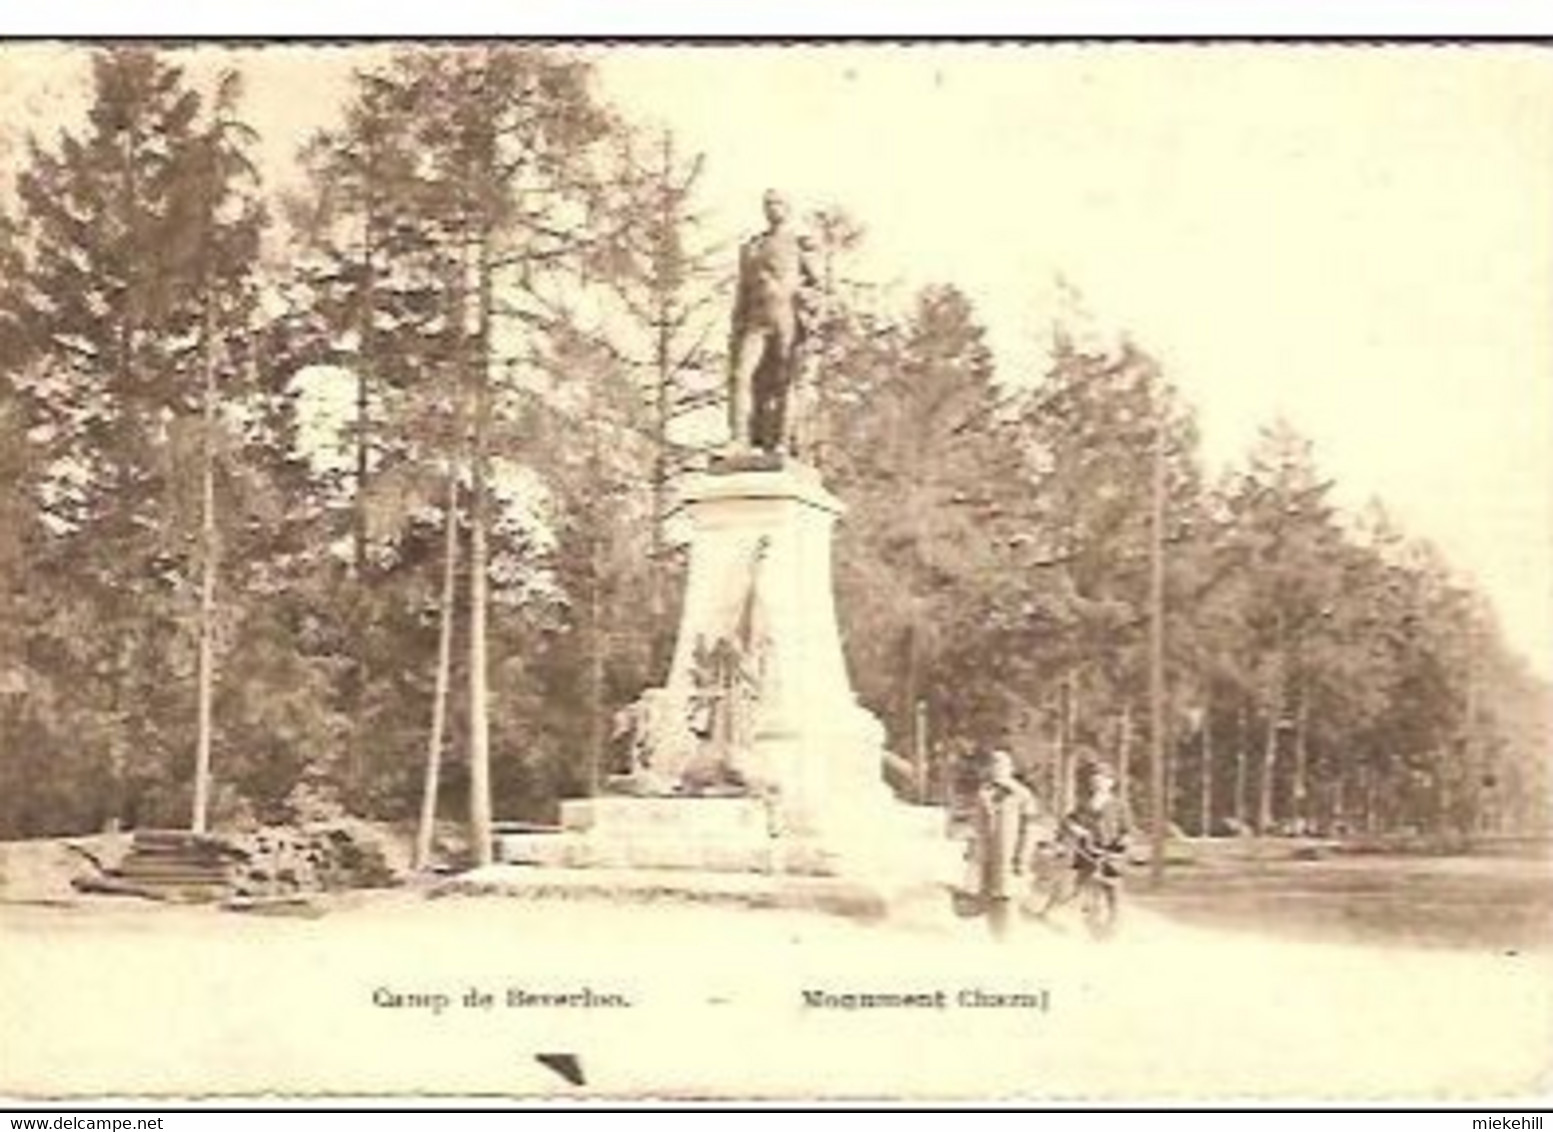 LEOPOLDSBURG -CAMP DE BEVERLOO-MONUMENT CHAZAL - Leopoldsburg (Beverloo Camp)